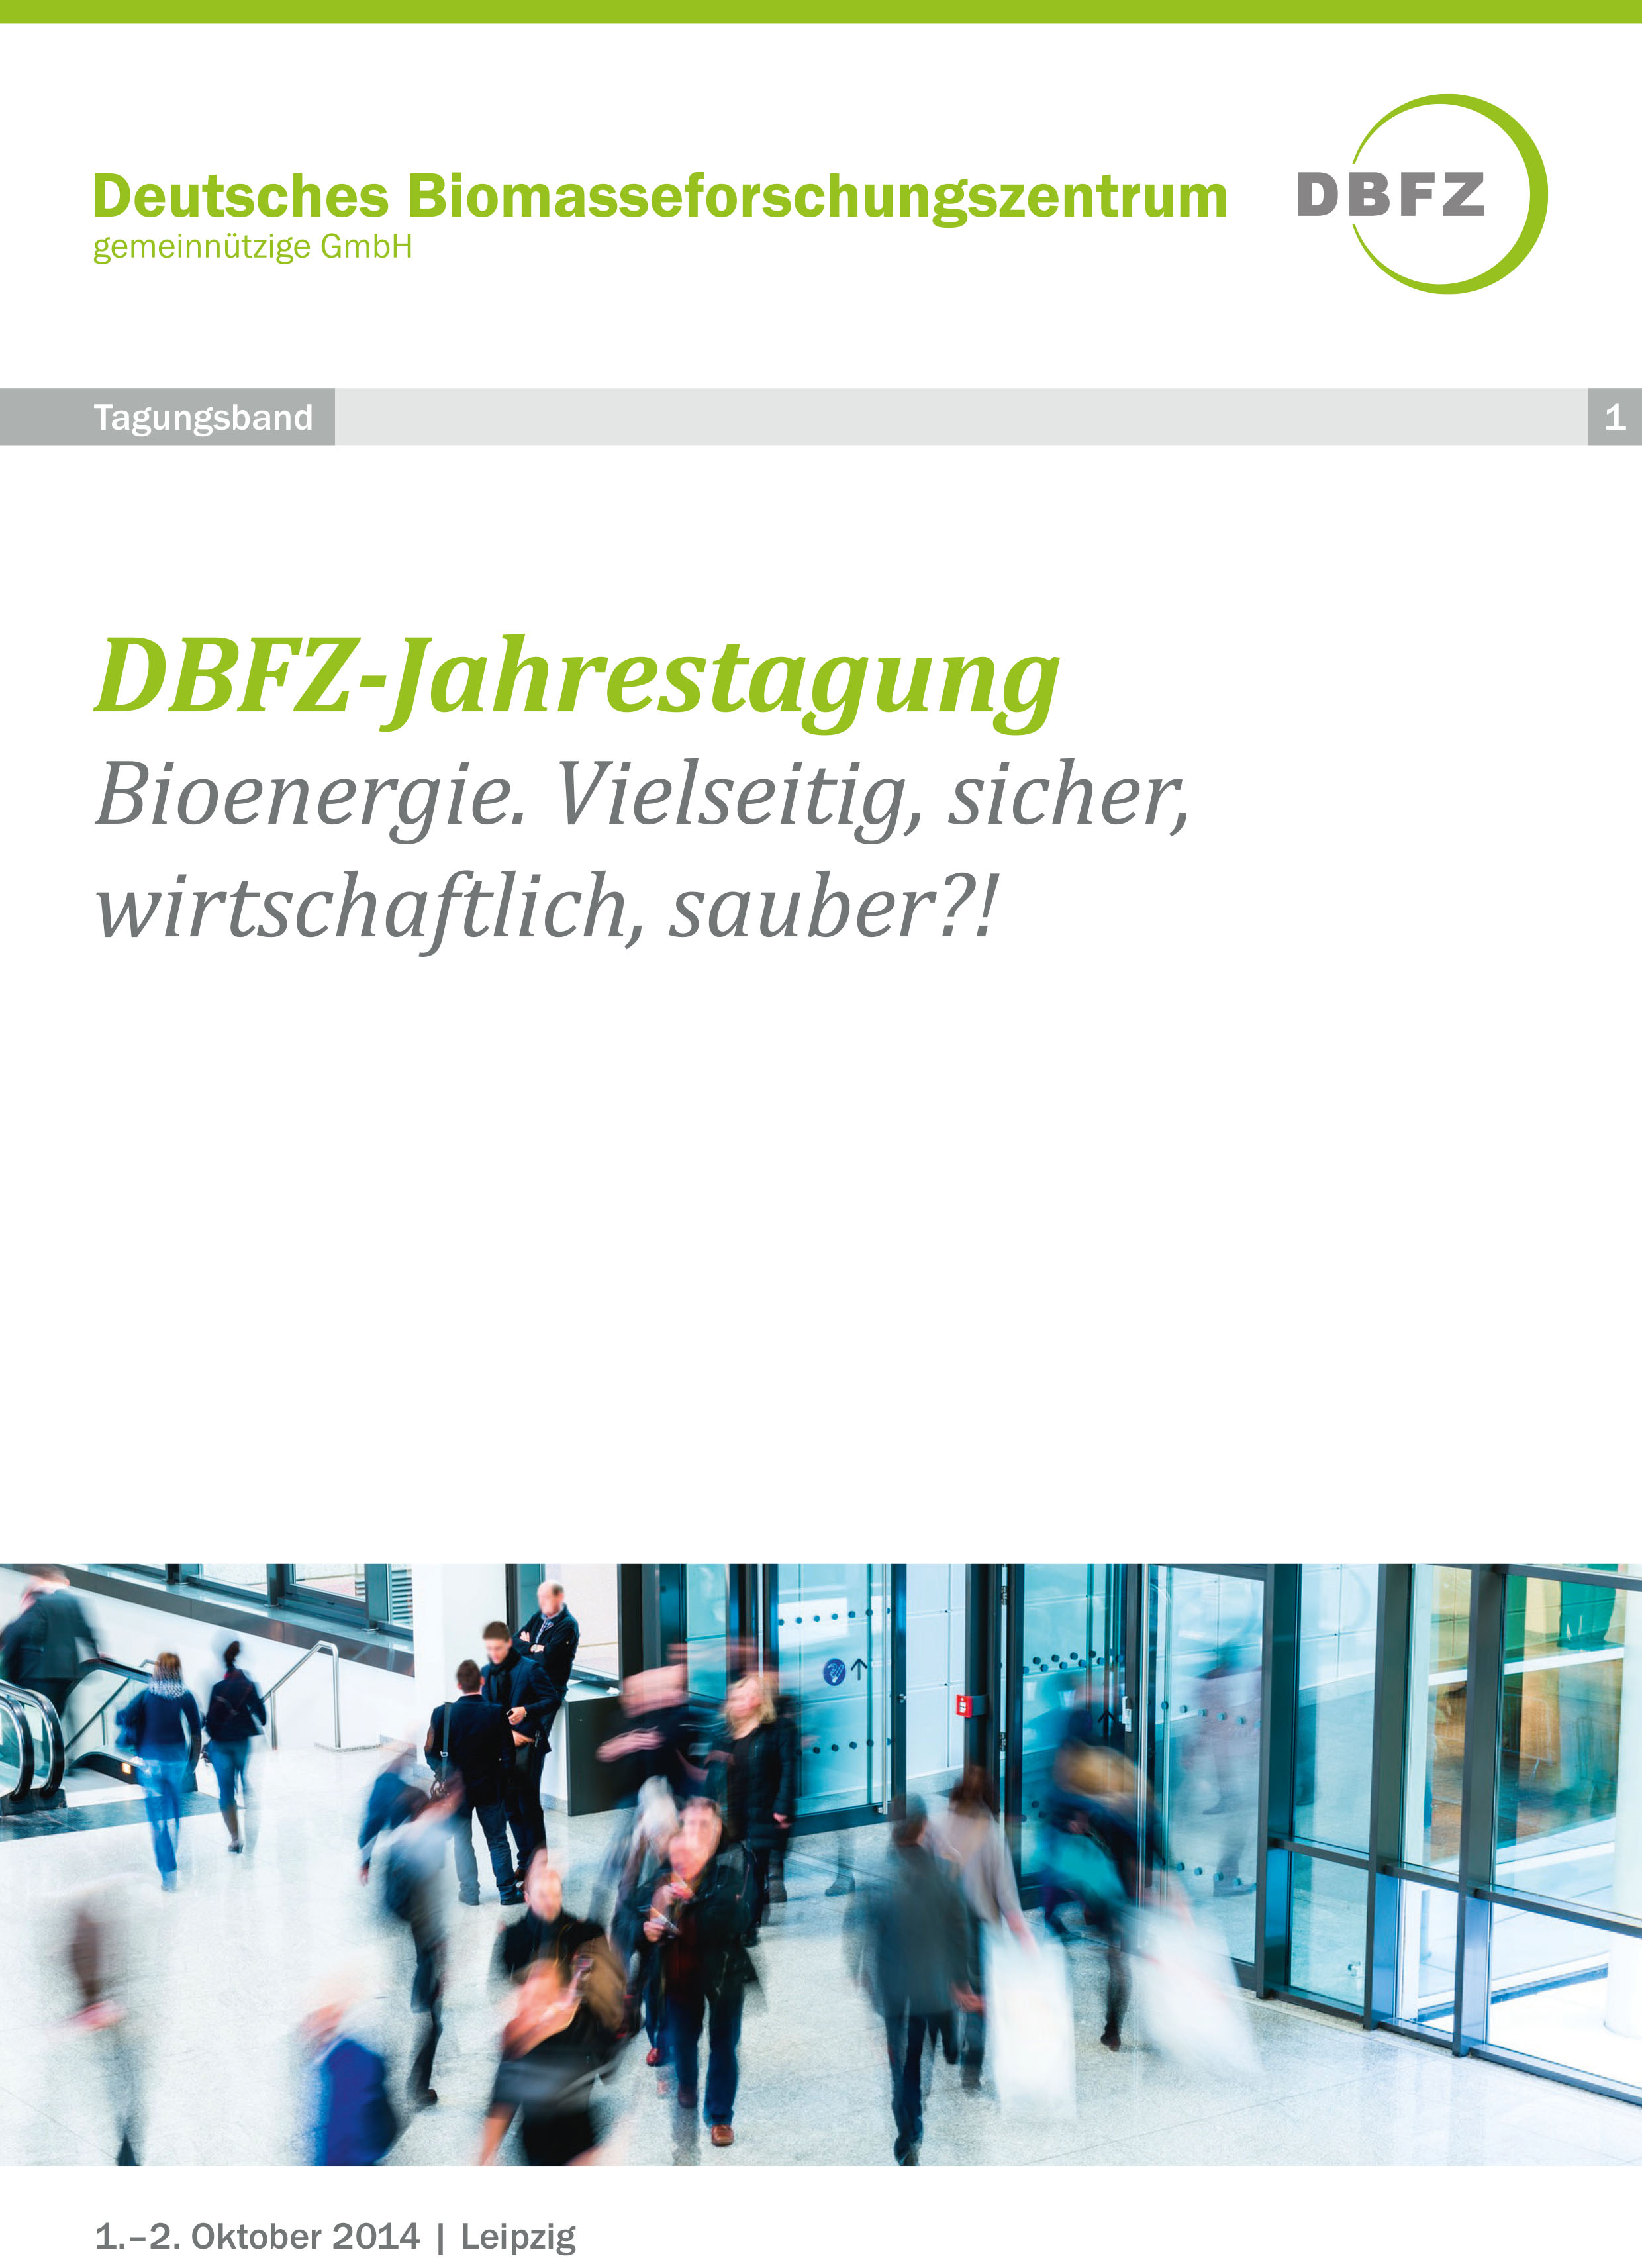 Tagungsband der DBFZ-Jahrestagung 2014